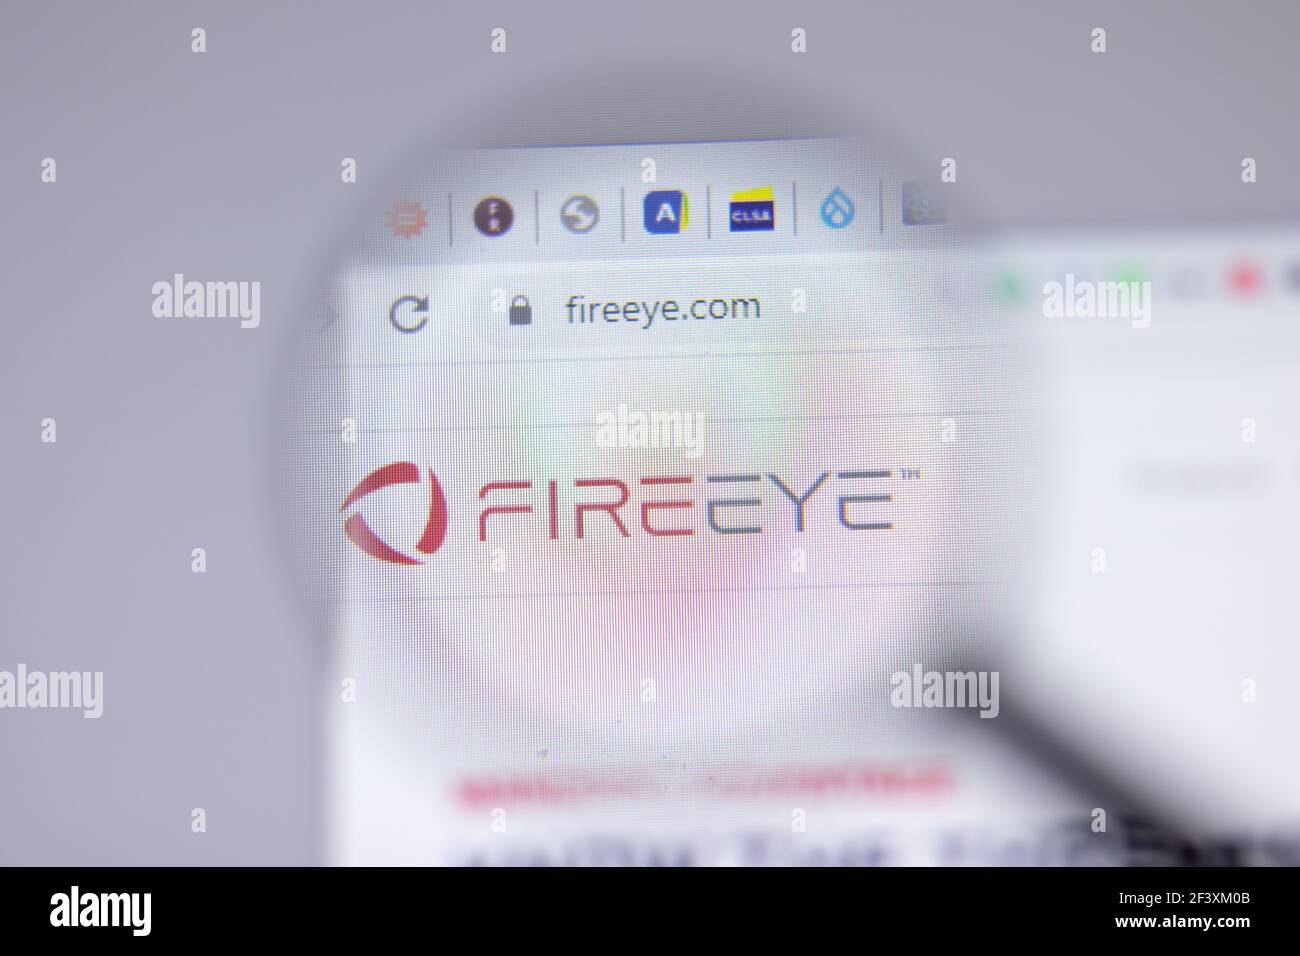 New York, USA - 18 Marzo 2021: Icona del logo della società FireEye sul sito, Editoriale illustrativo Foto Stock